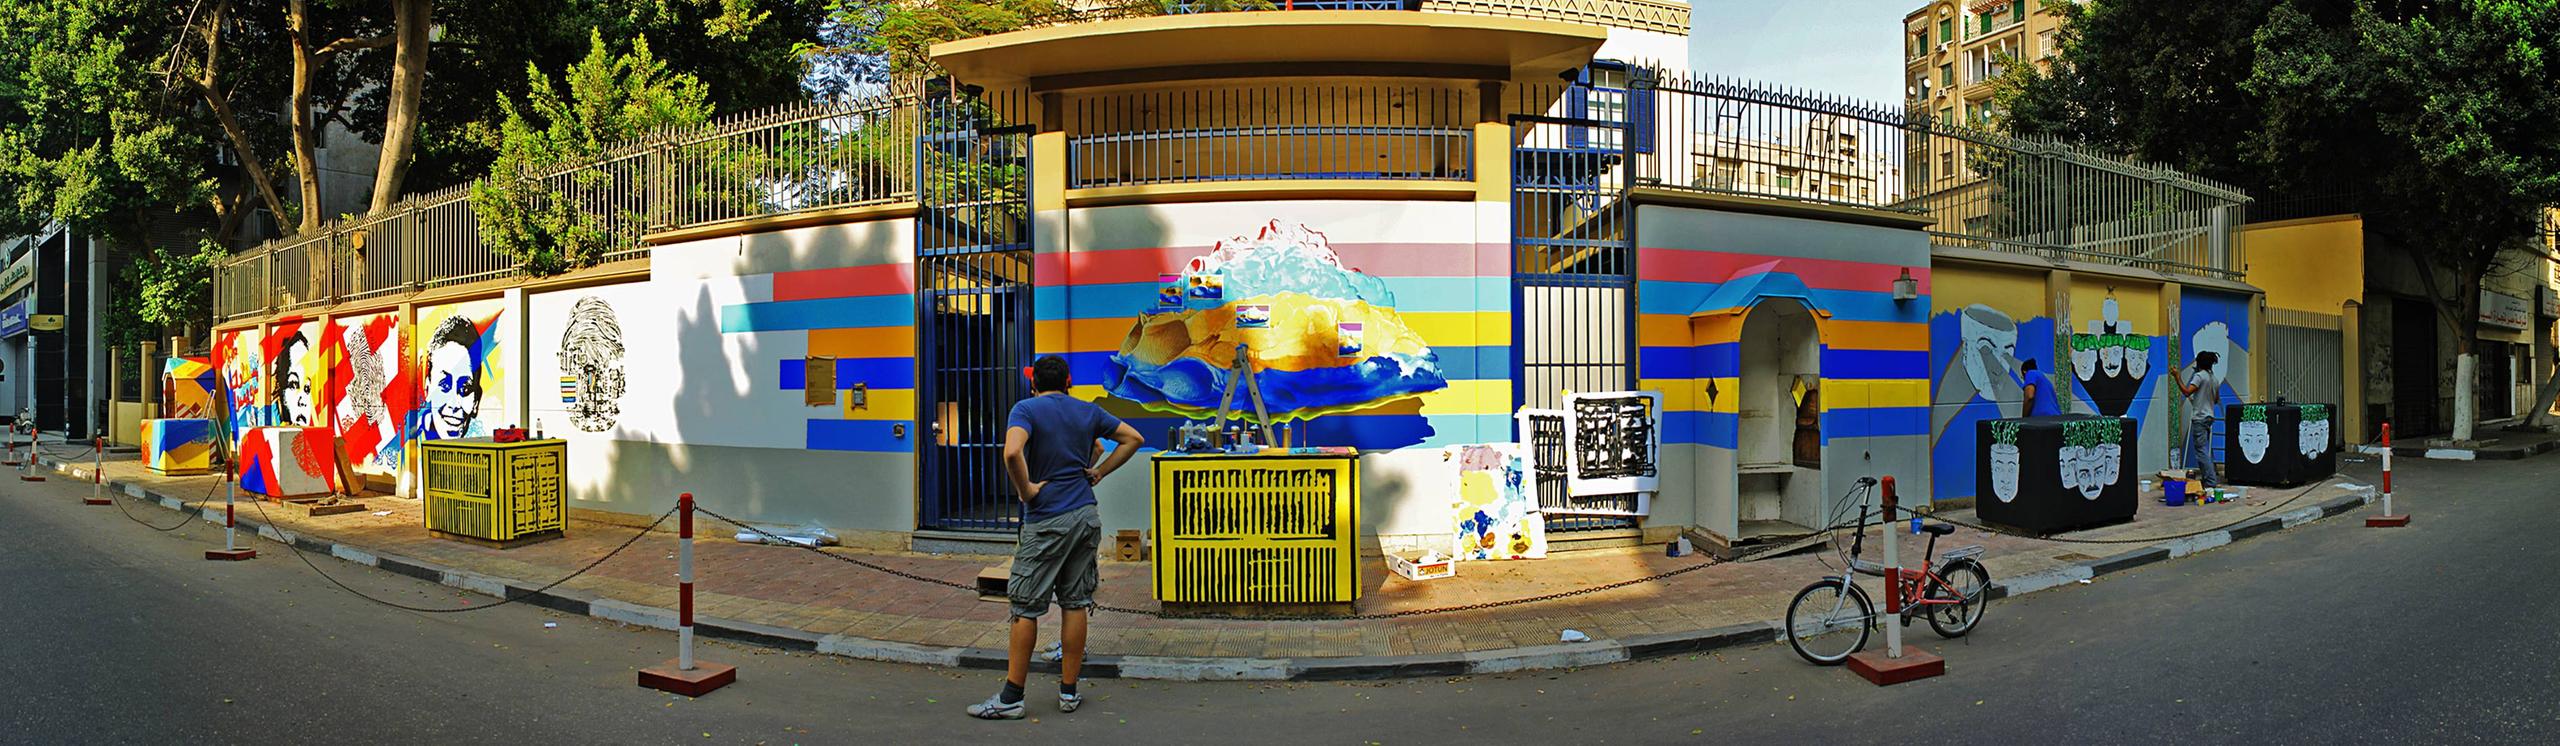 رسوم غرافيتي على سور السفارة السويسرية بالقاهرة